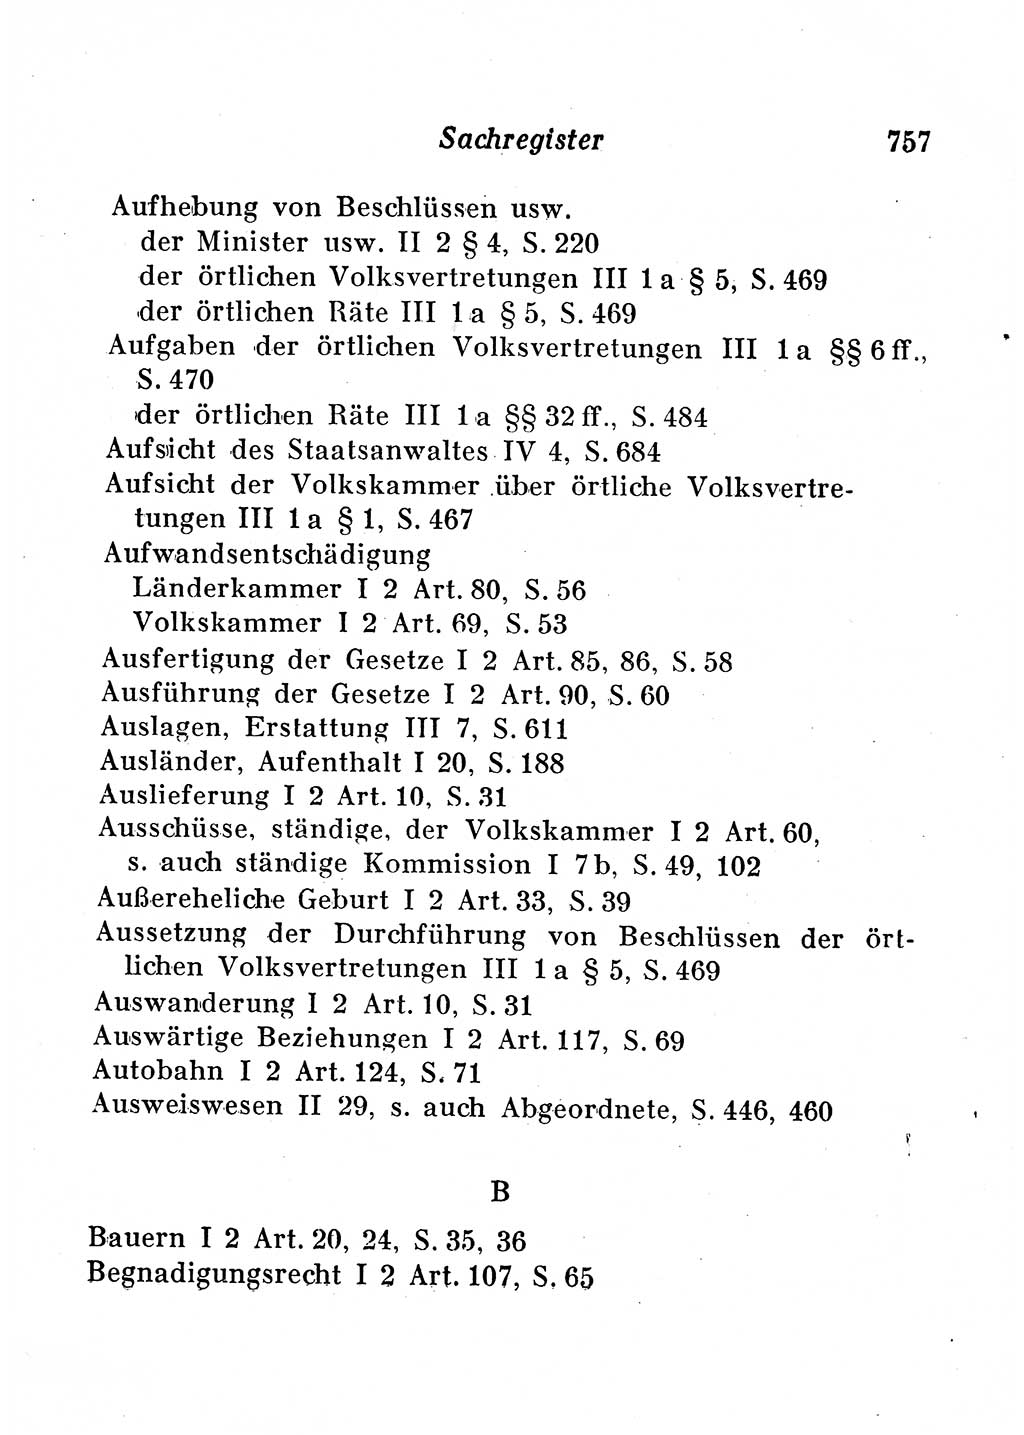 Staats- und verwaltungsrechtliche Gesetze der Deutschen Demokratischen Republik (DDR) 1958, Seite 757 (StVerwR Ges. DDR 1958, S. 757)